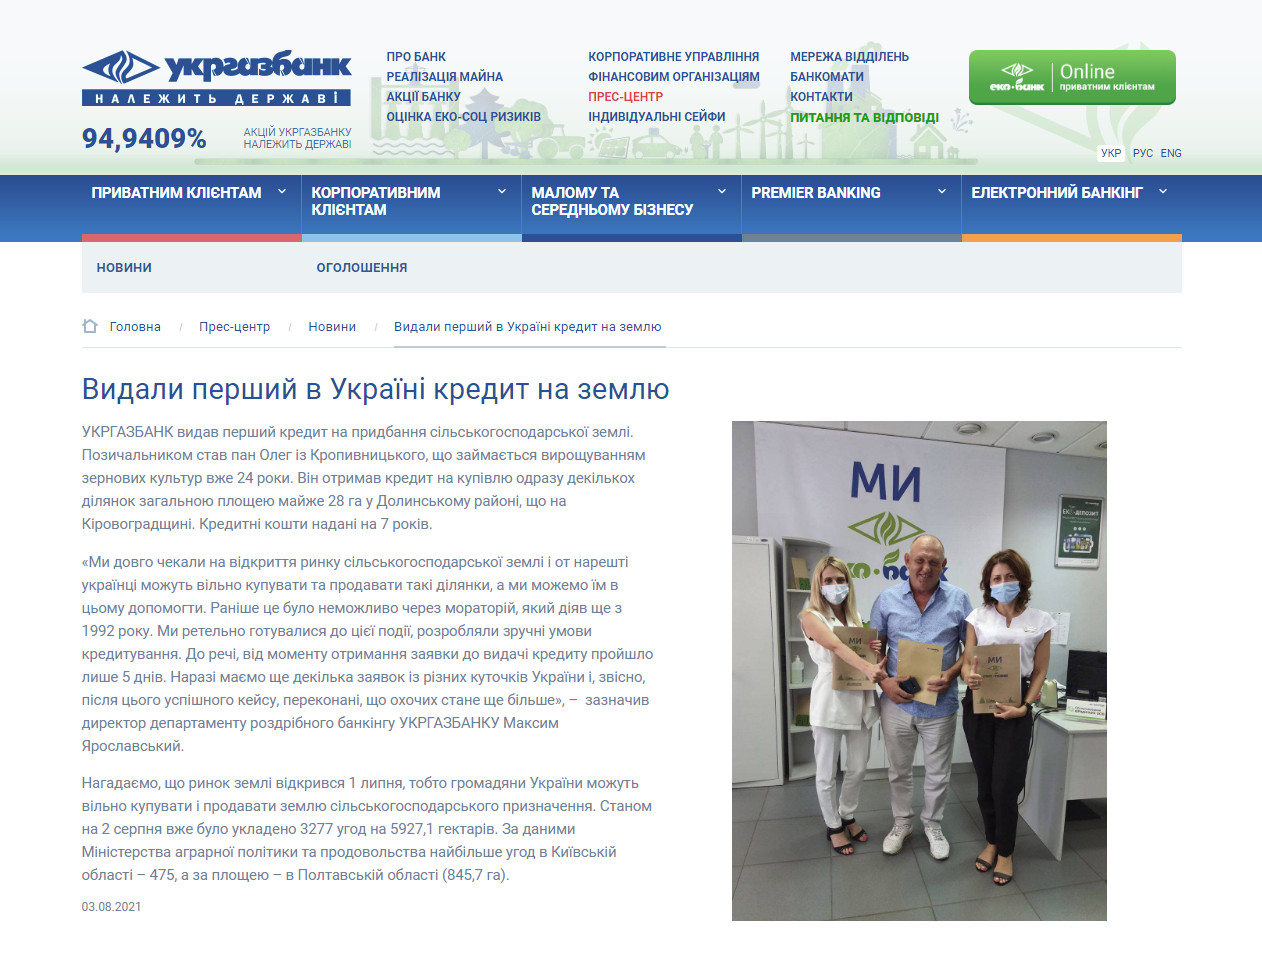 https://www.ukrgasbank.com/press_center/news/12869-vydali_pervyyi_v_ukraine_kredit_na_zemlyu